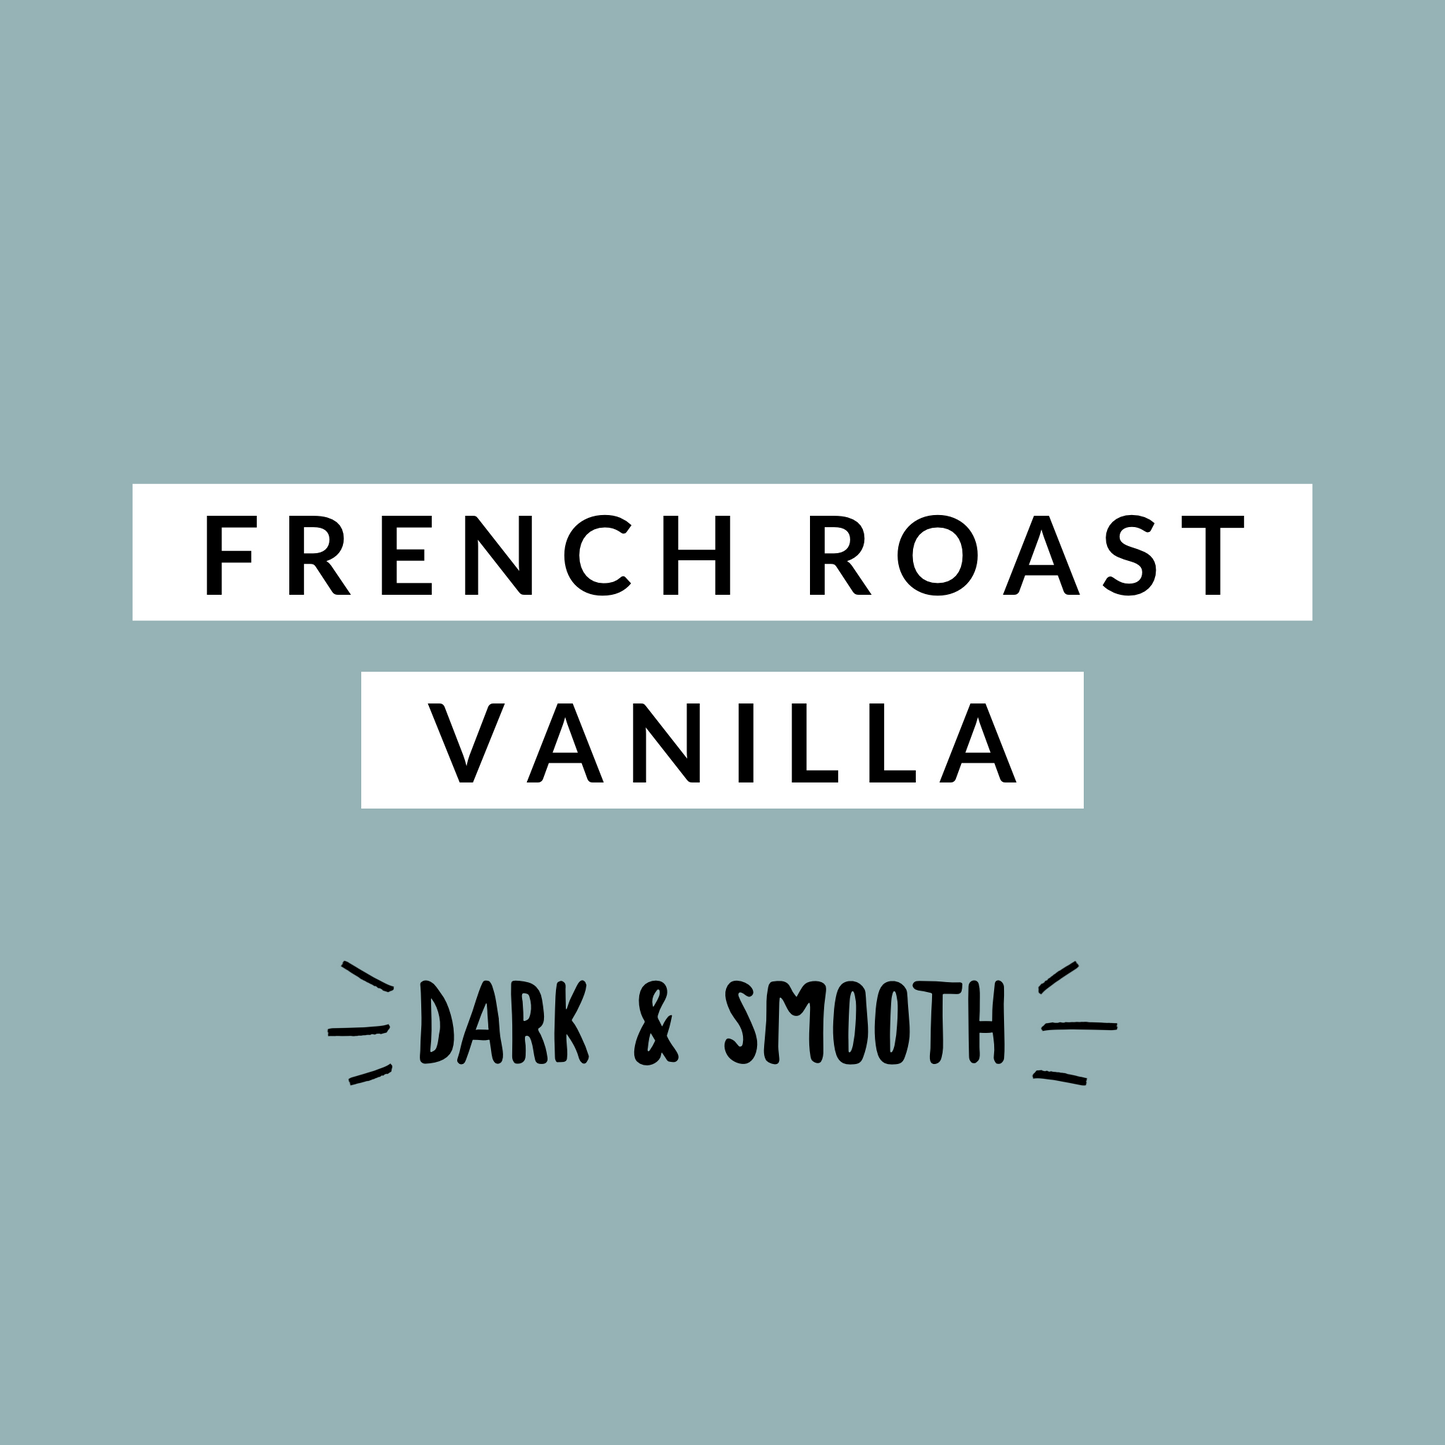 French Roast Vanilla